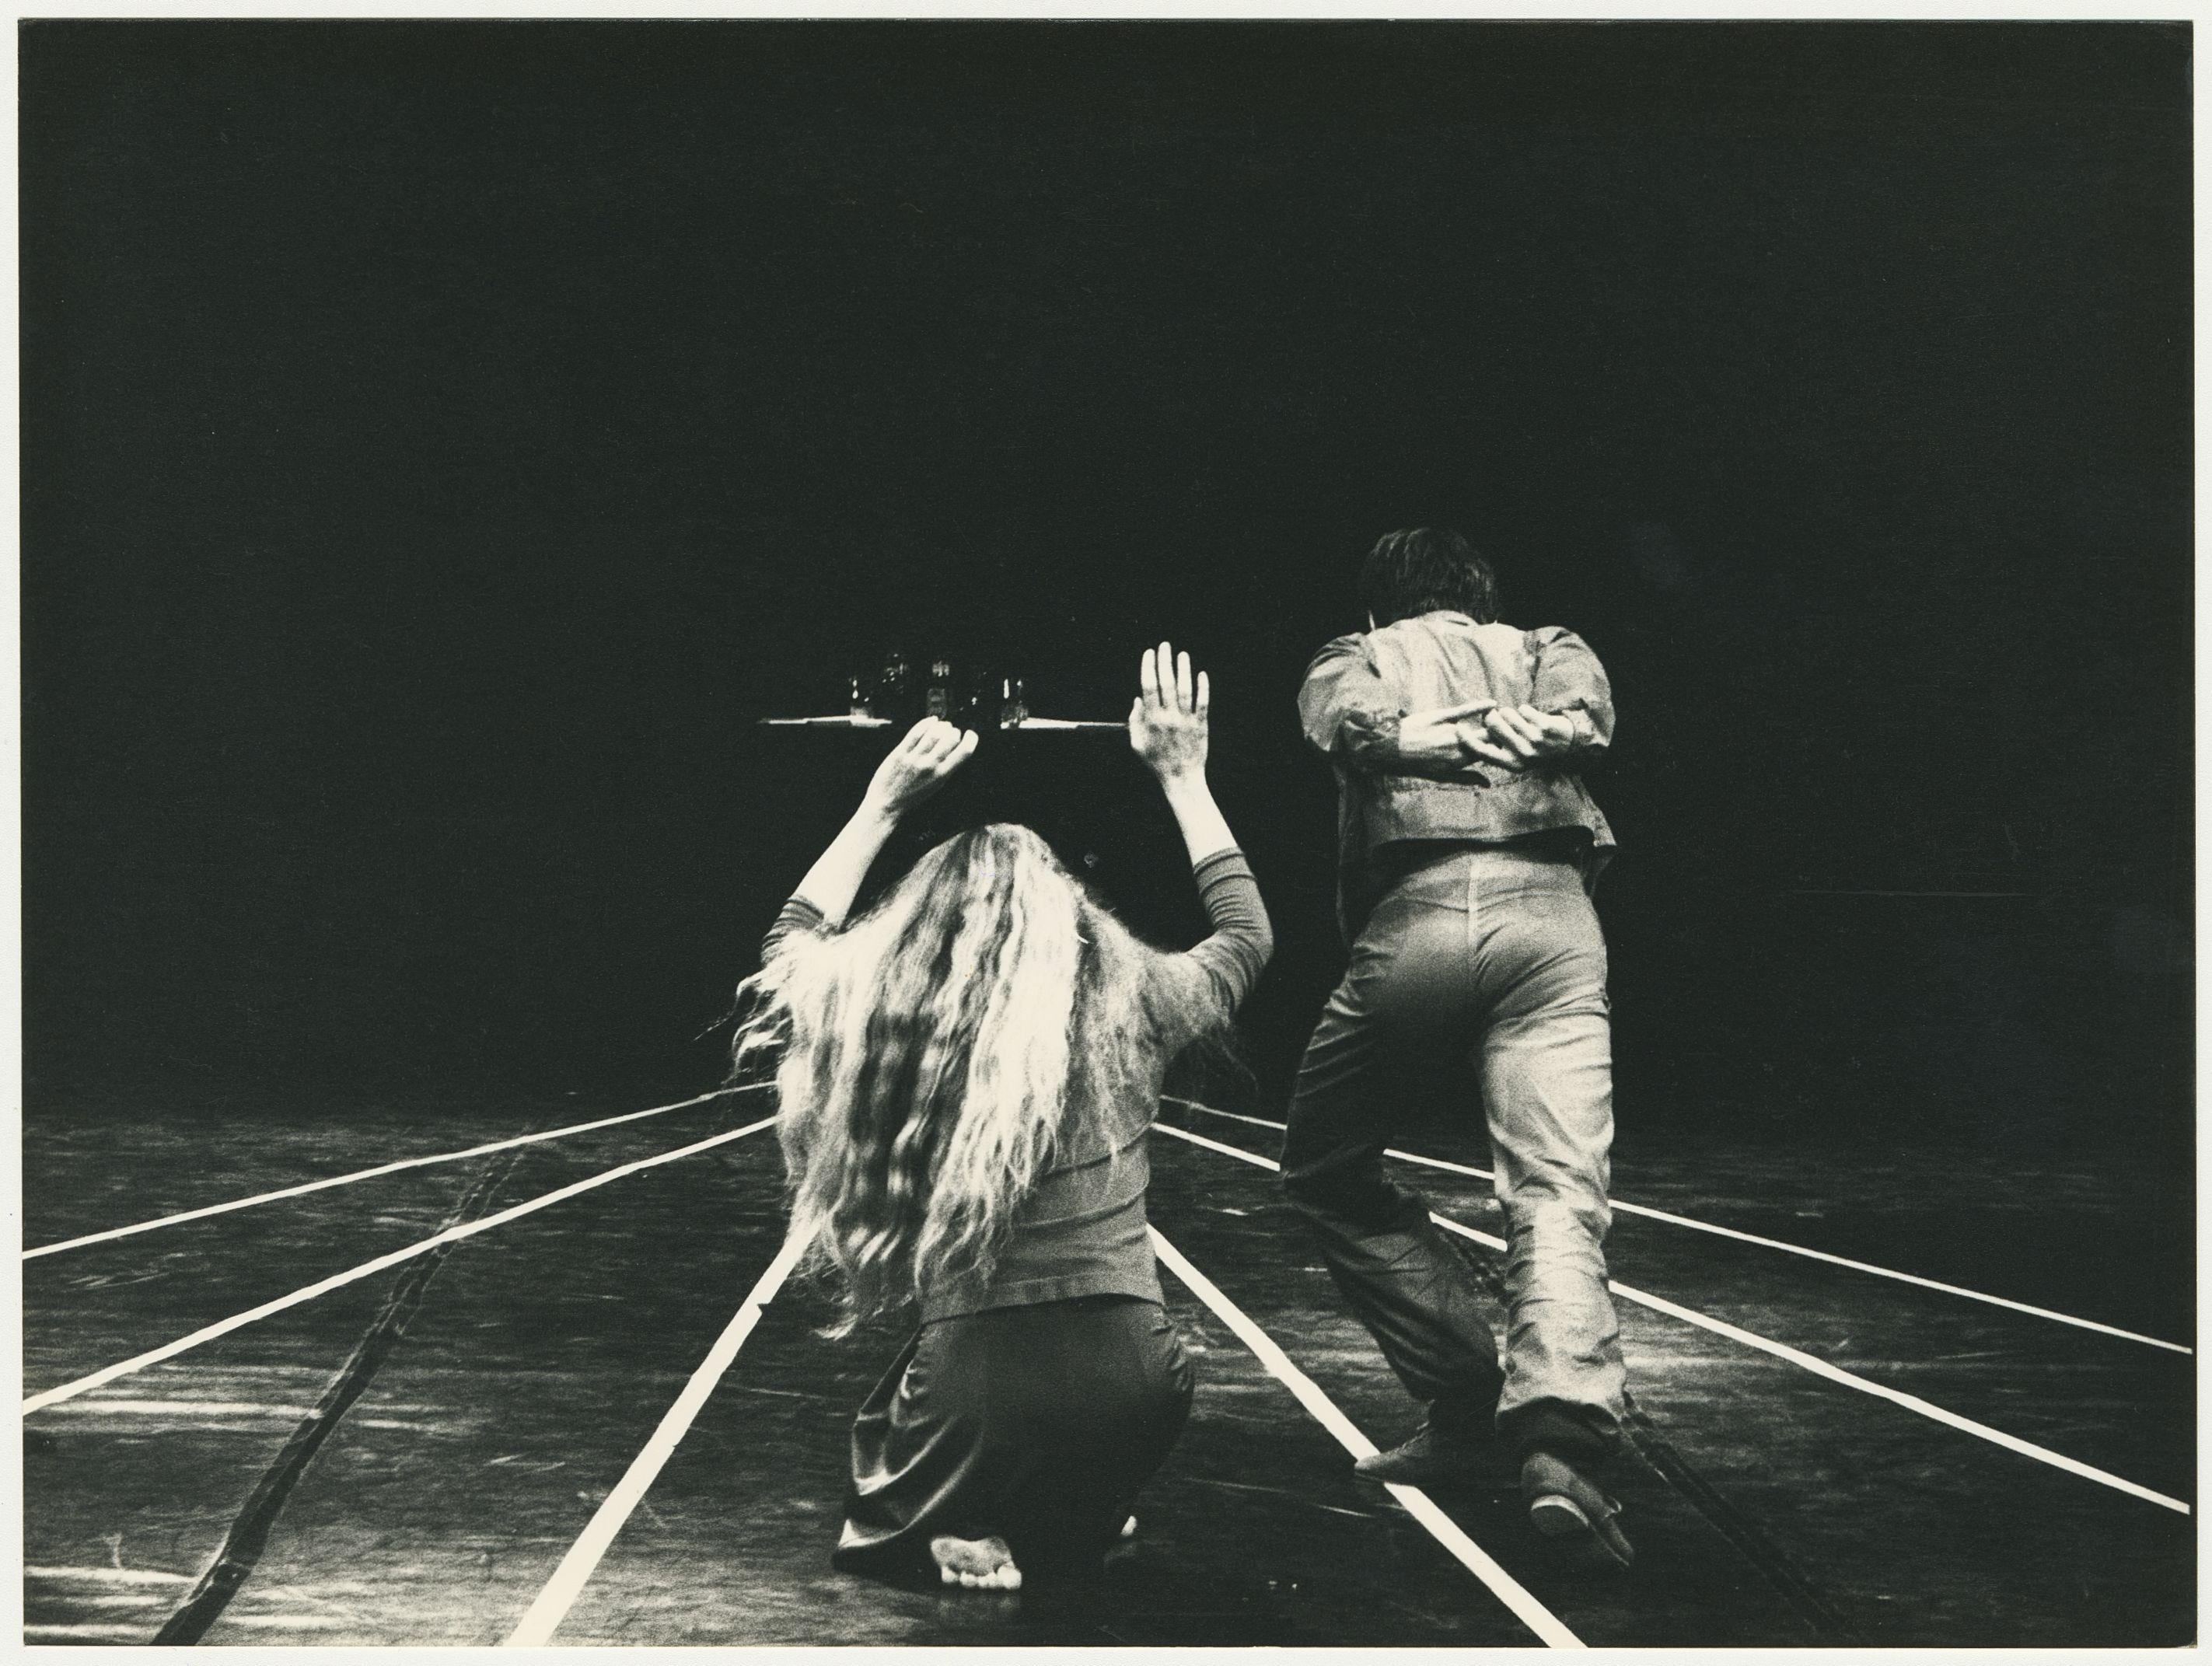 Deux danseurs de dos, faisant face à des lignes blanches parallèles sur le sol